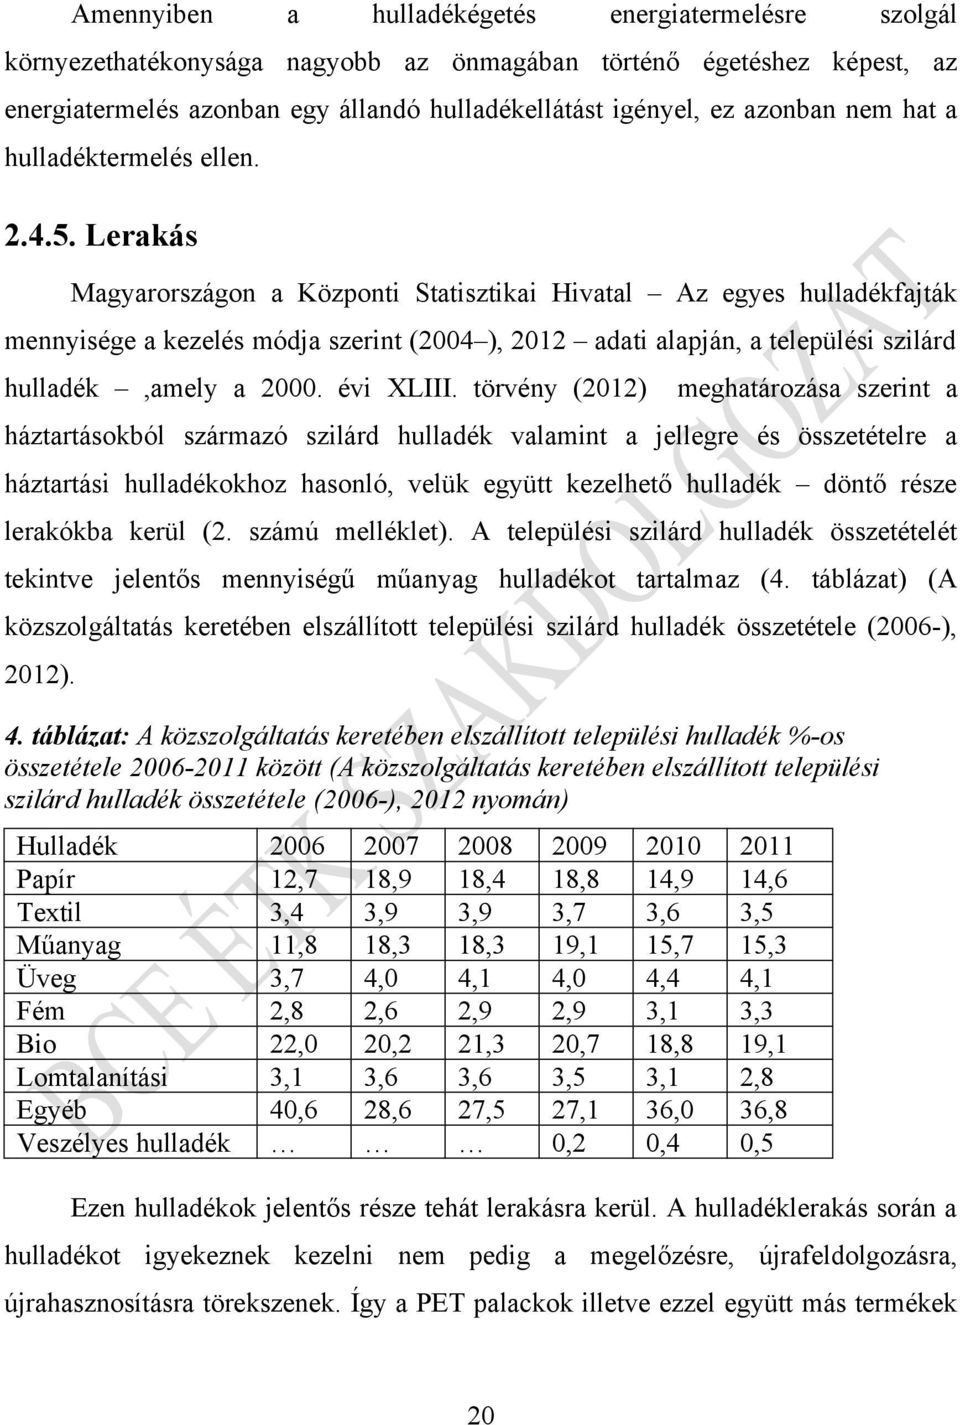 Lerakás Magyarországon a Központi Statisztikai Hivatal Az egyes hulladékfajták mennyisége a kezelés módja szerint (2004 ), 2012 adati alapján, a települési szilárd hulladék,amely a 2000. évi XLIII.